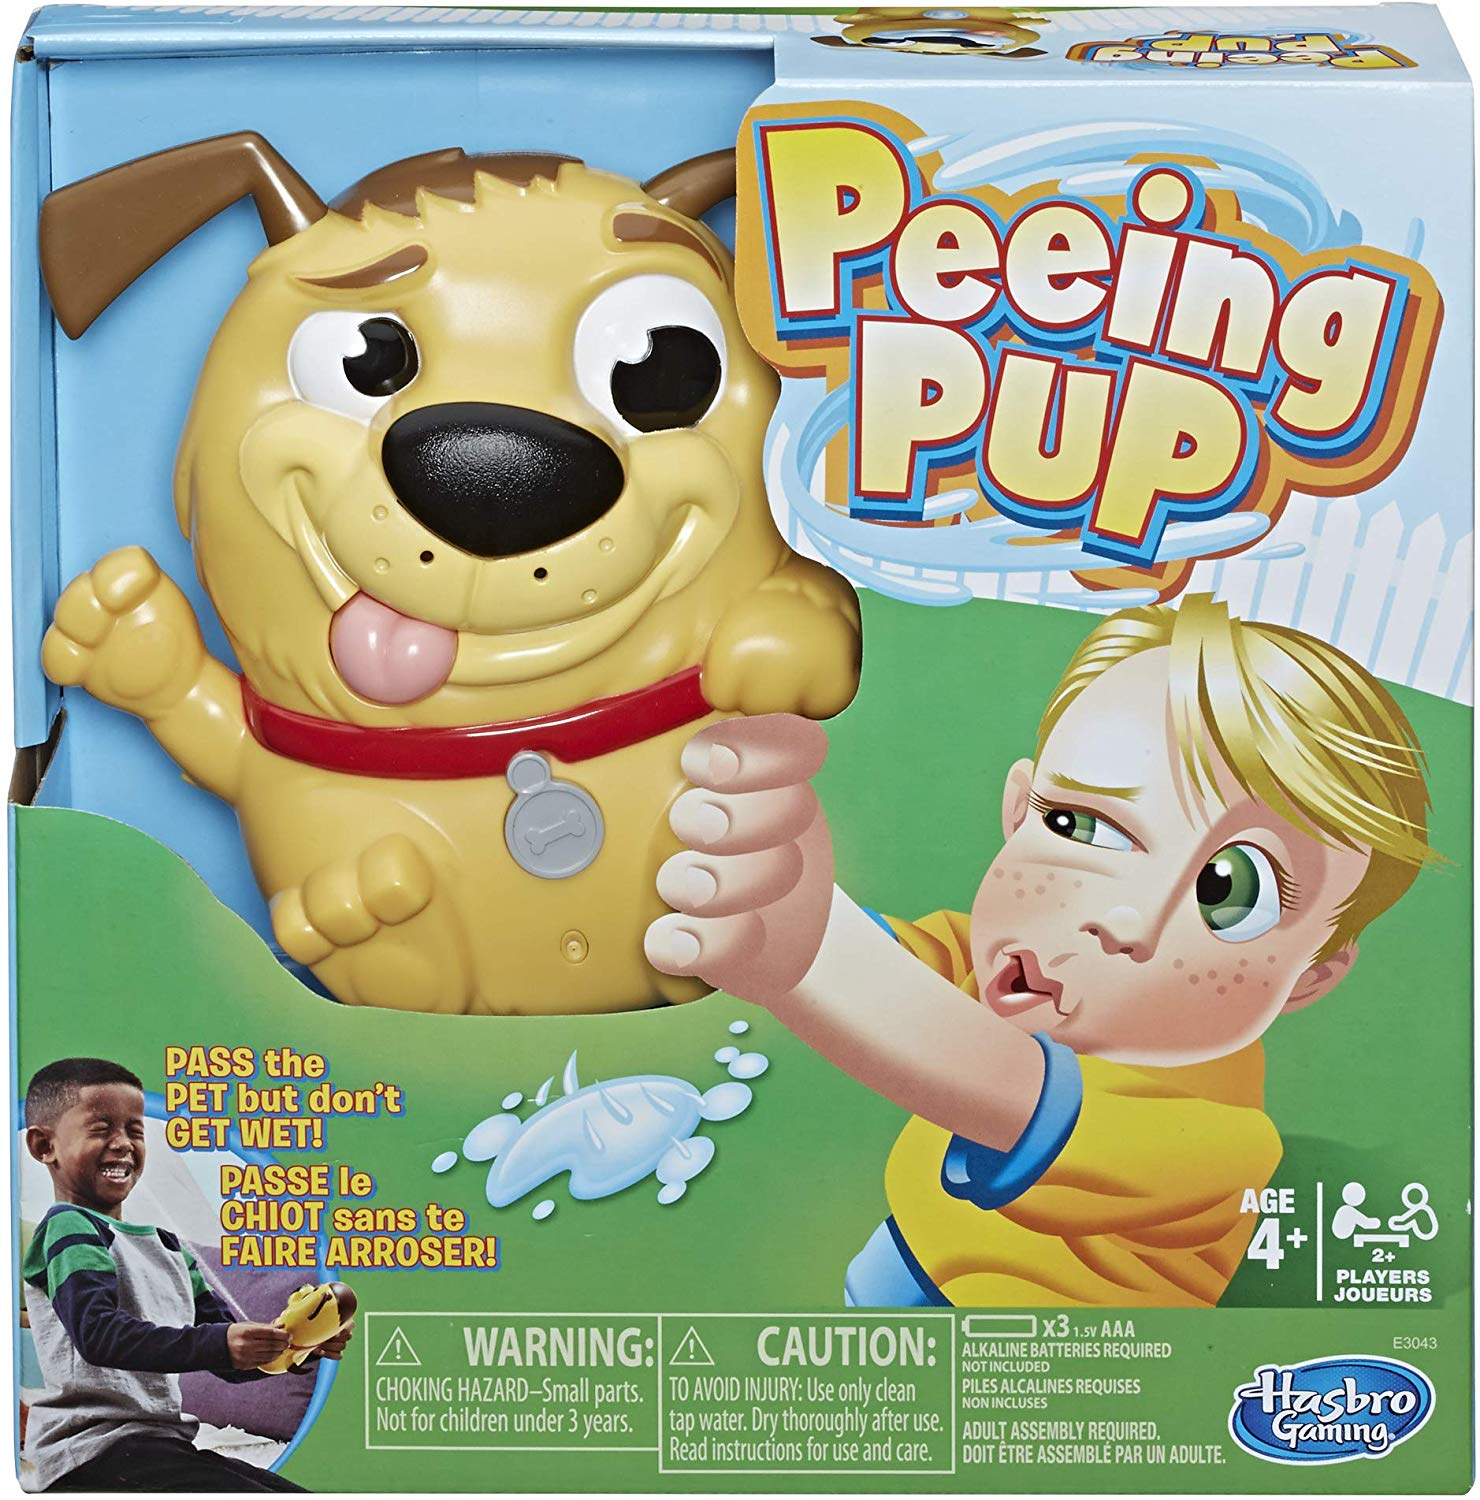 Peeing Pup Game